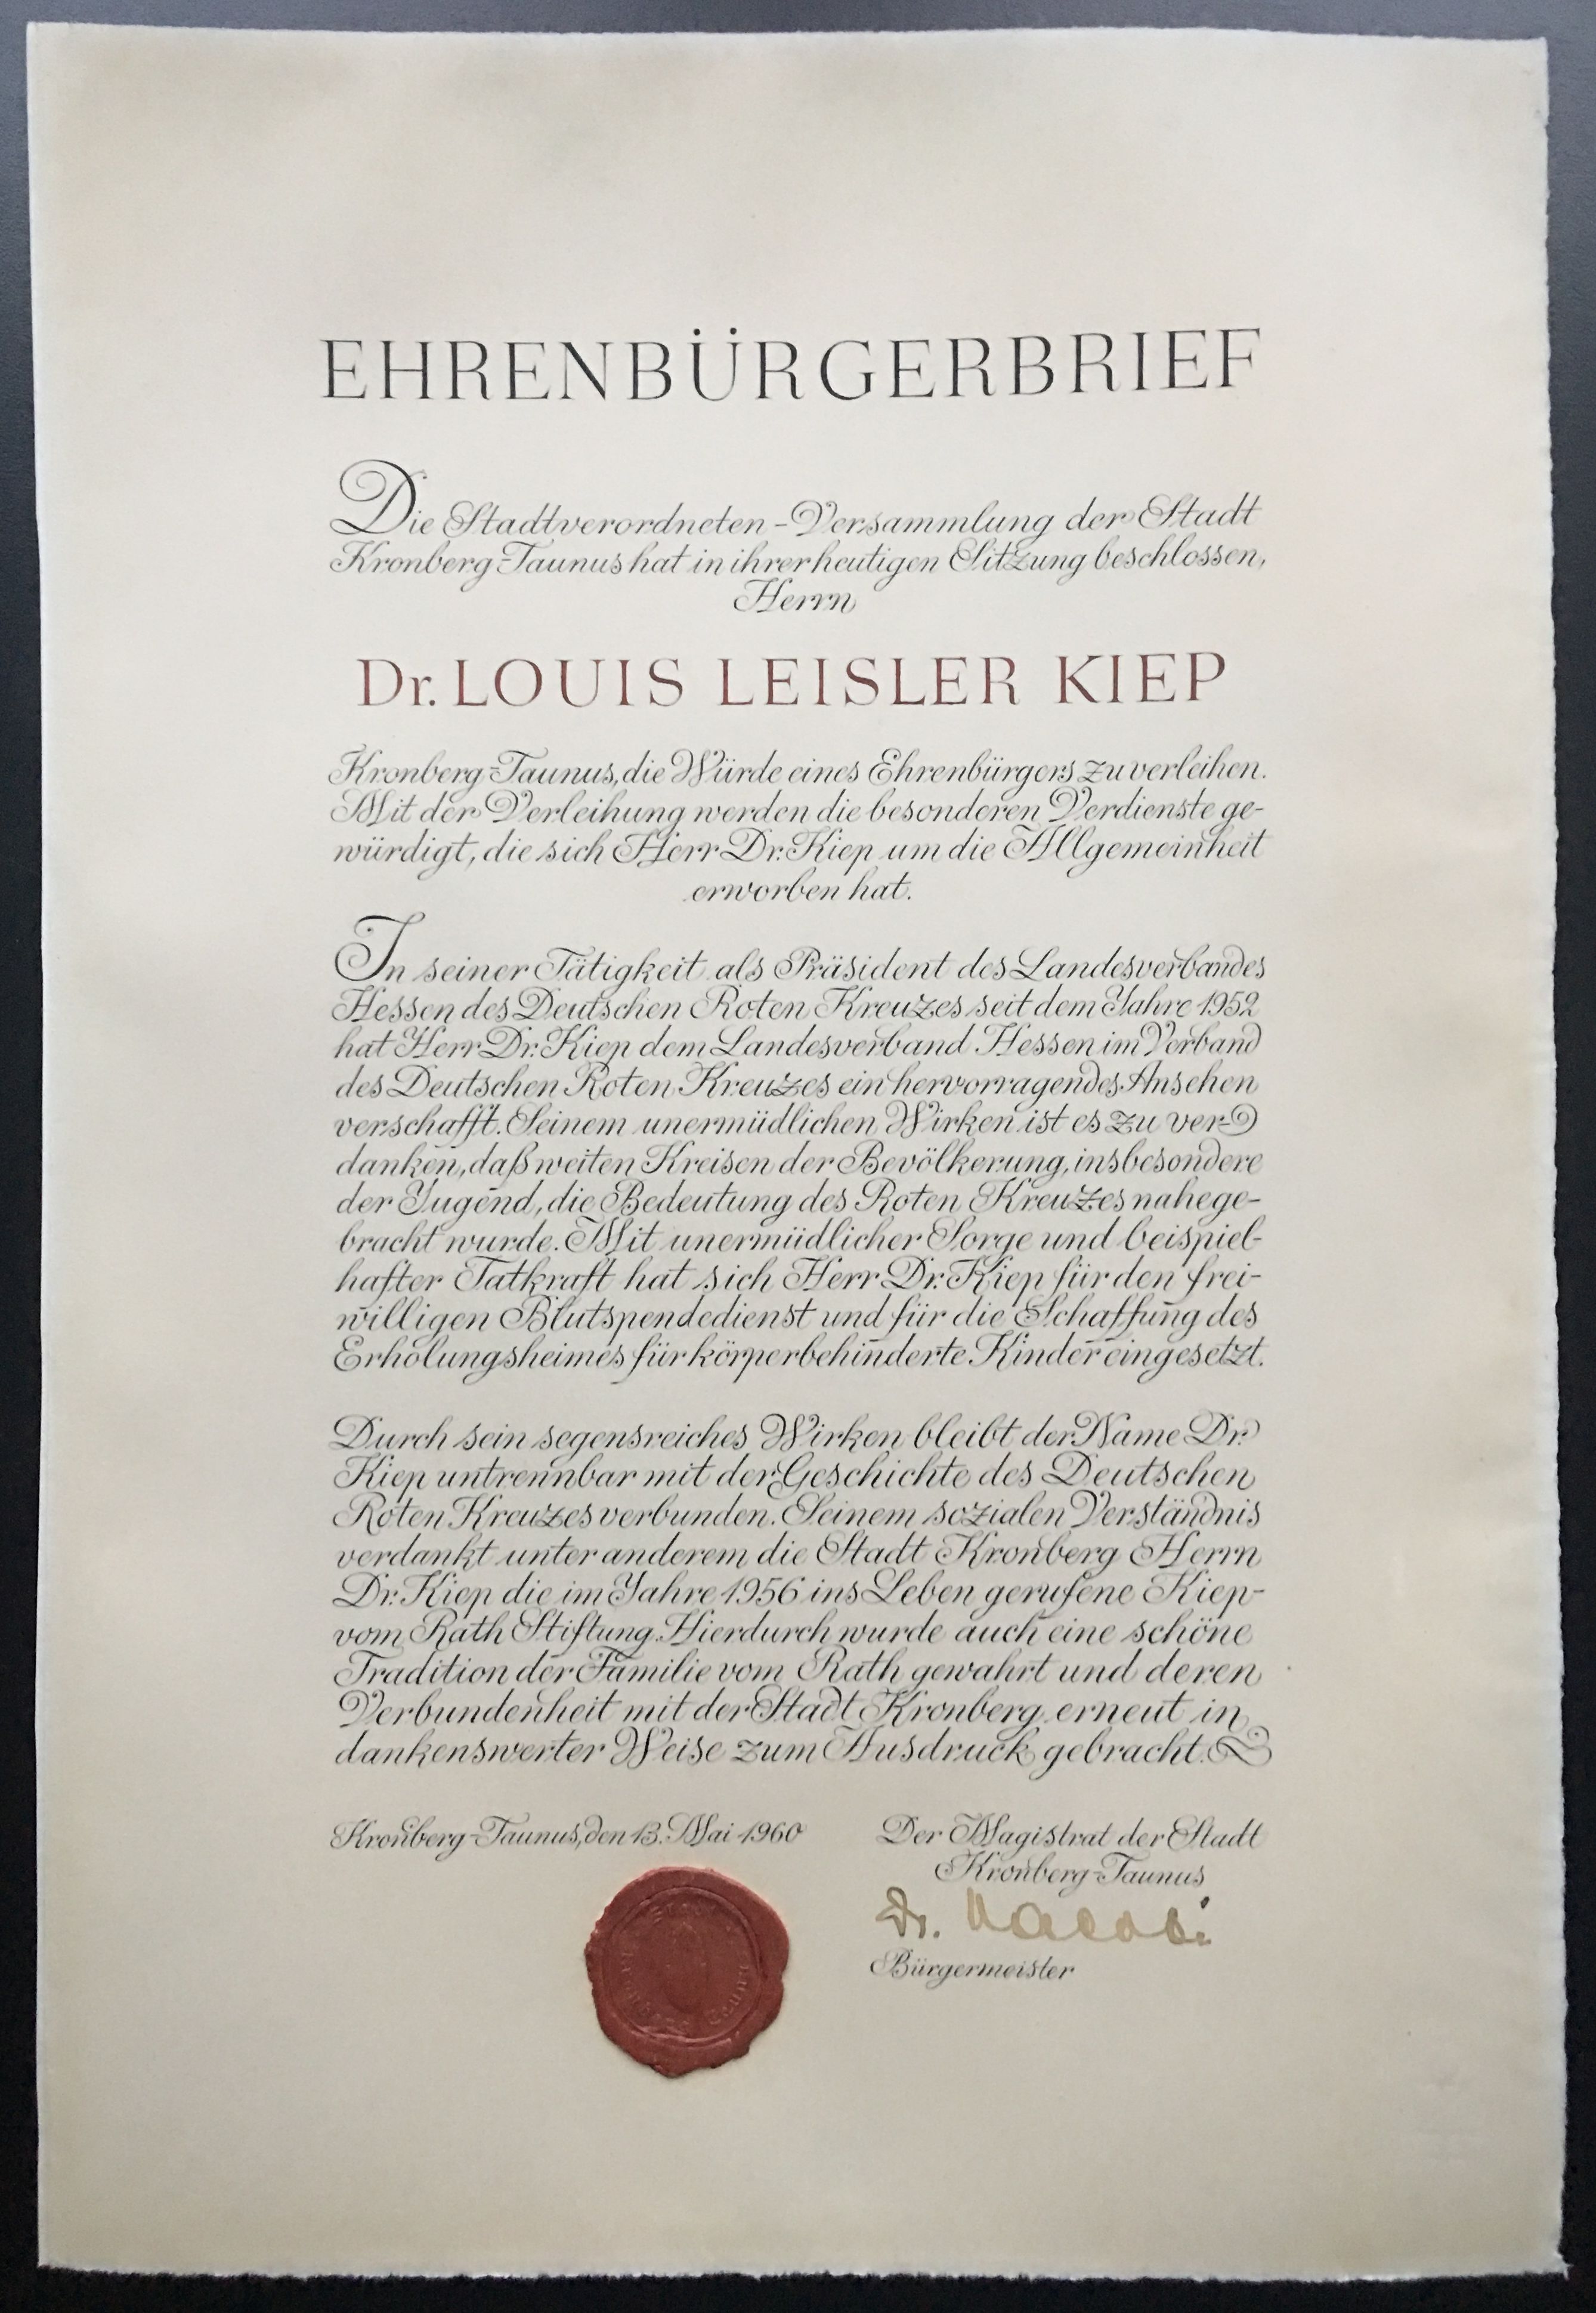 Ehrenbürgerbrief der Stadt Kronberg für Dr. Louis Leisler Kiep, 1960 (Taunus-Rhein-Main - Regionalgeschichtliche Sammlung Dr. Stefan Naas CC BY-NC-SA)